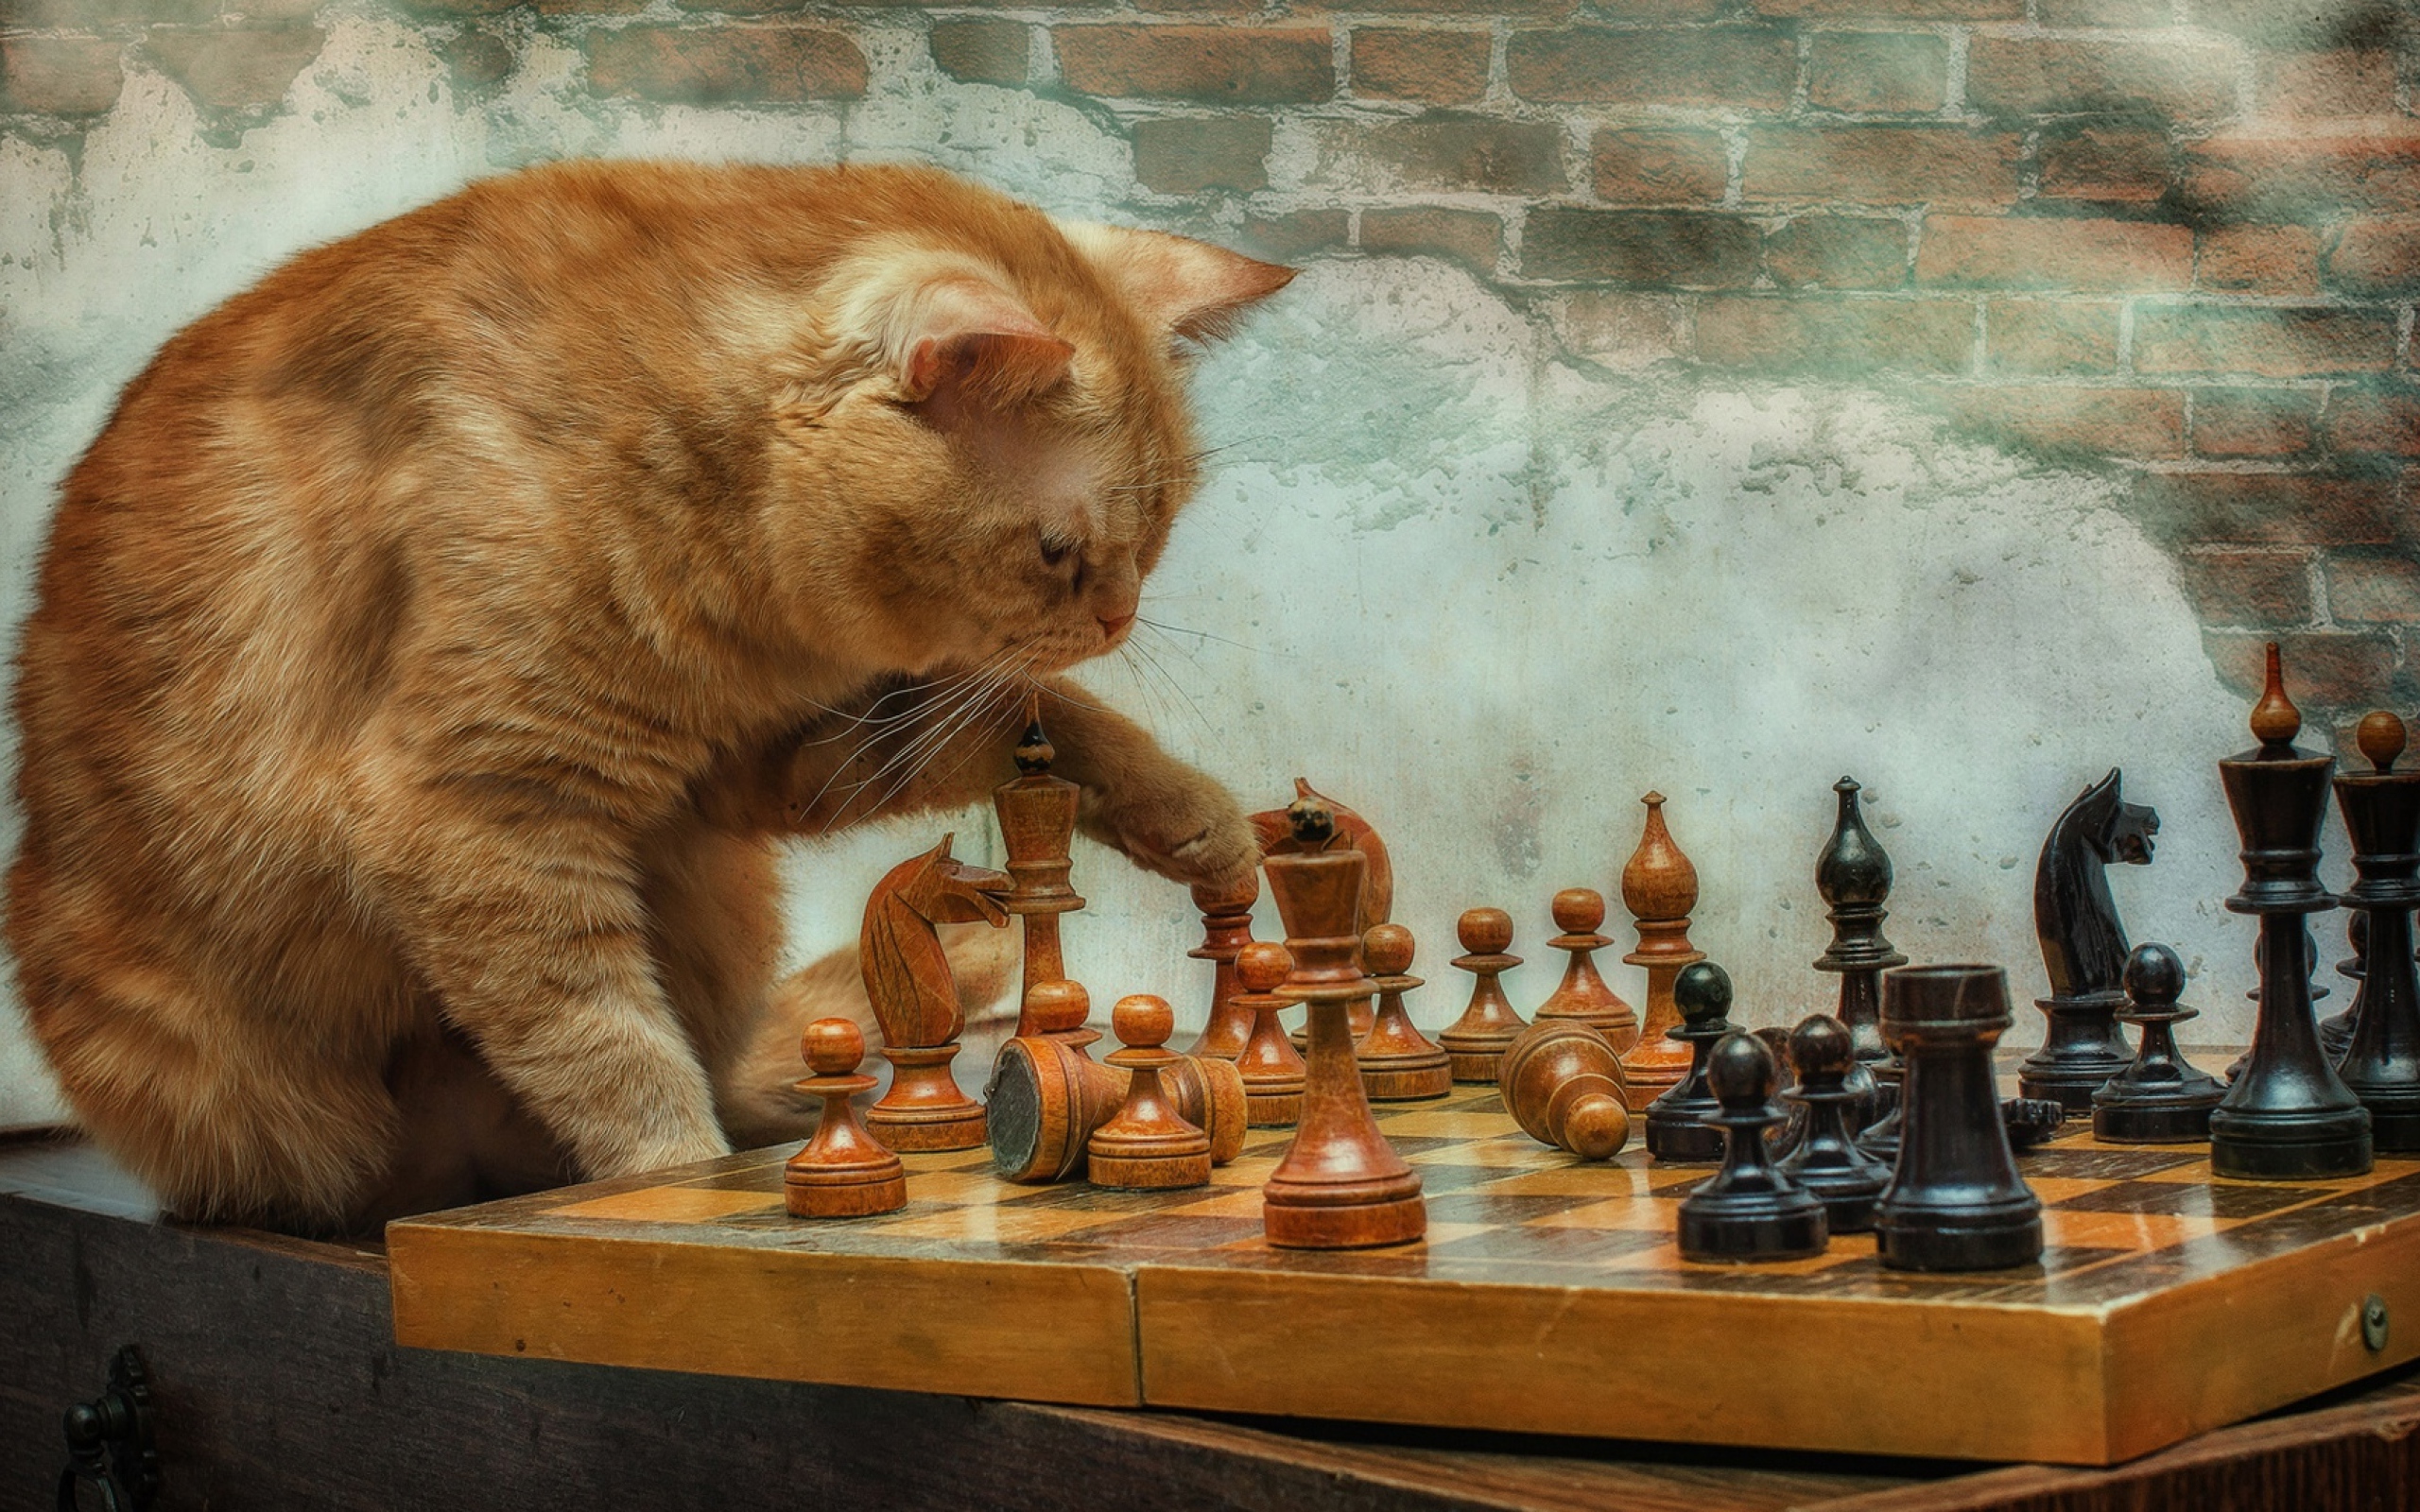 Рыжий кот играет с деревянными шахматами у стены